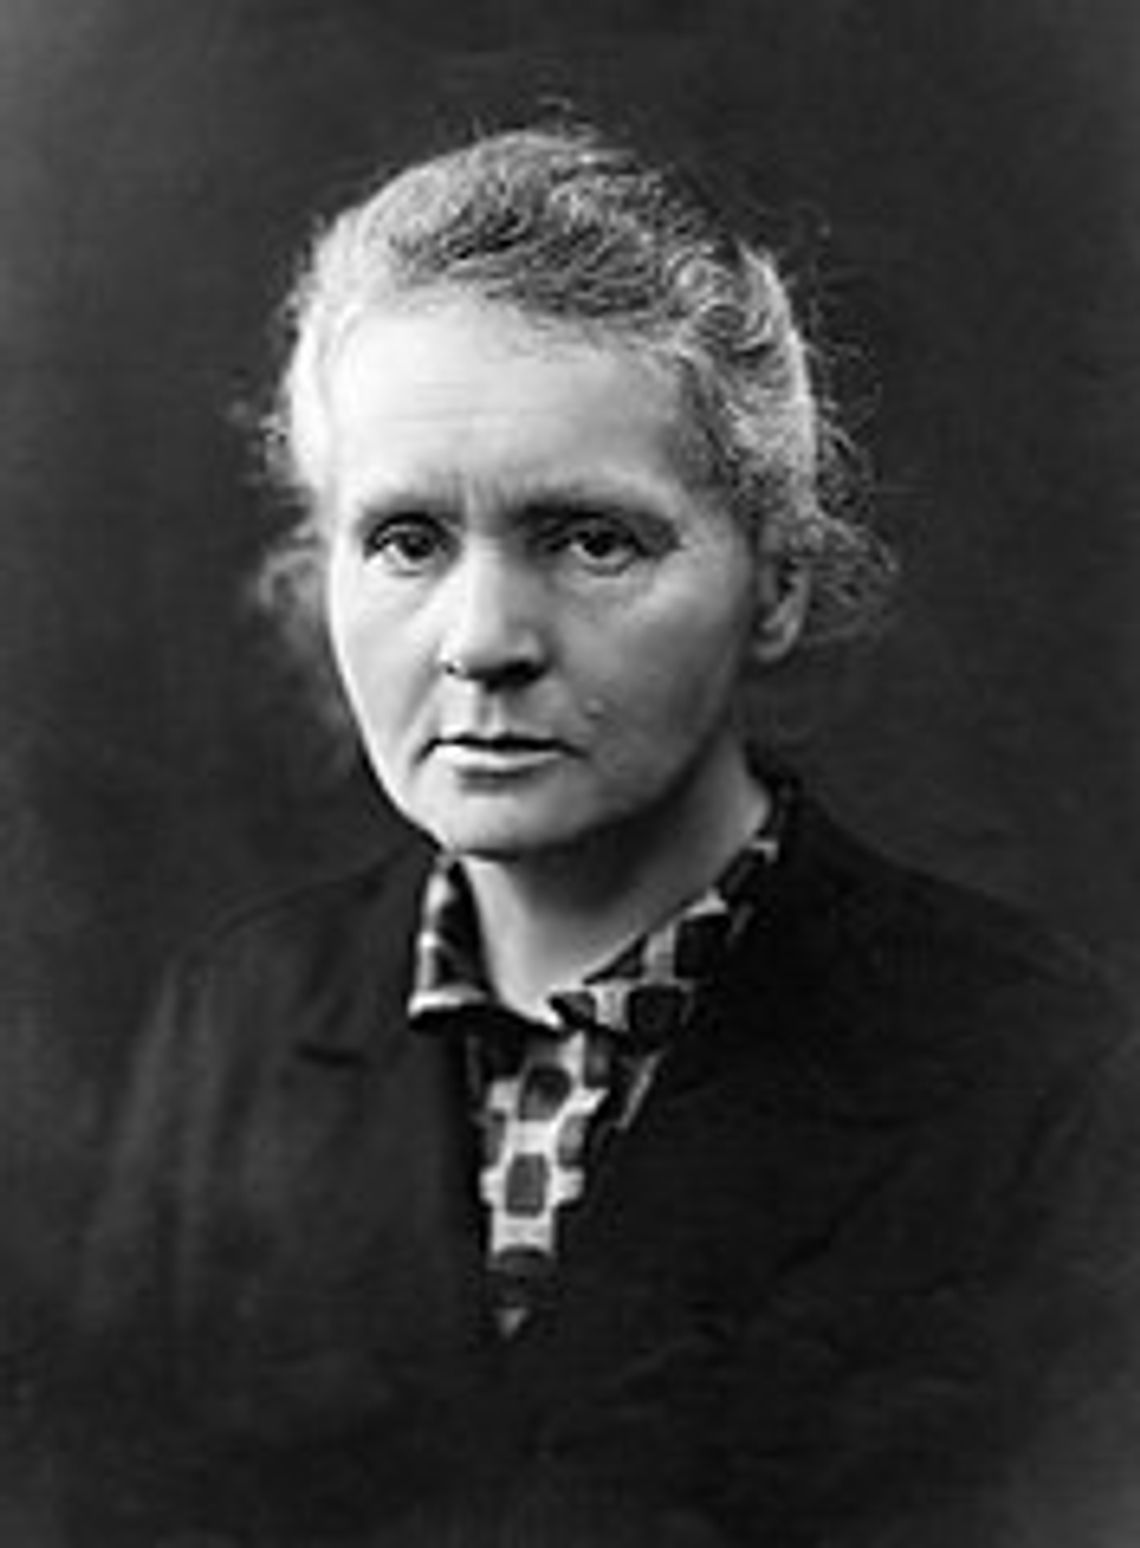 Maria Skłodowska-Curie - Kobieta, która wyprzedziła swoje czasy. Opowiada dr hab. Krystyna Leszczyńska-Wichmanowska